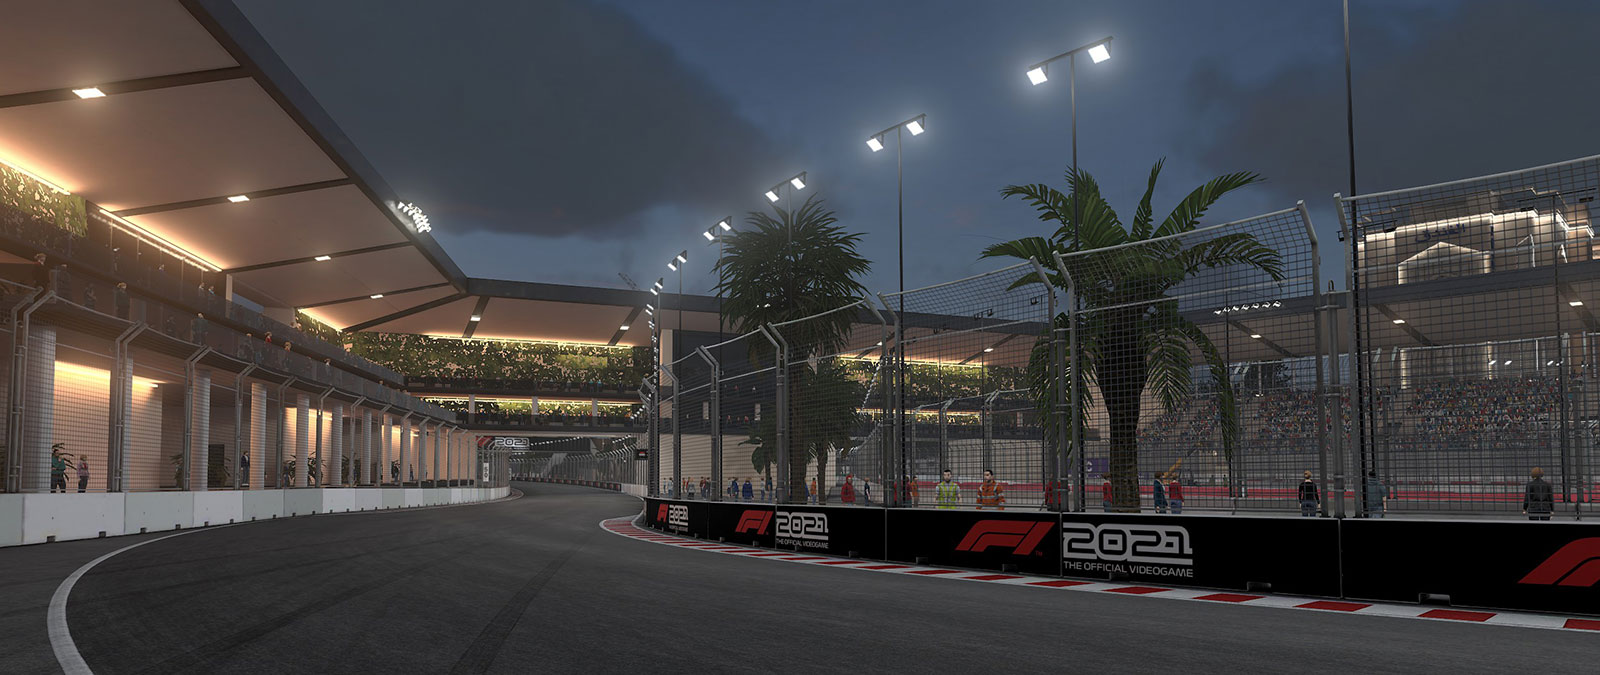 Logo após o pôr-do-sol, uma pista de F1 está iluminada por postes de luz enquanto os fãs assistem das arquibancadas.